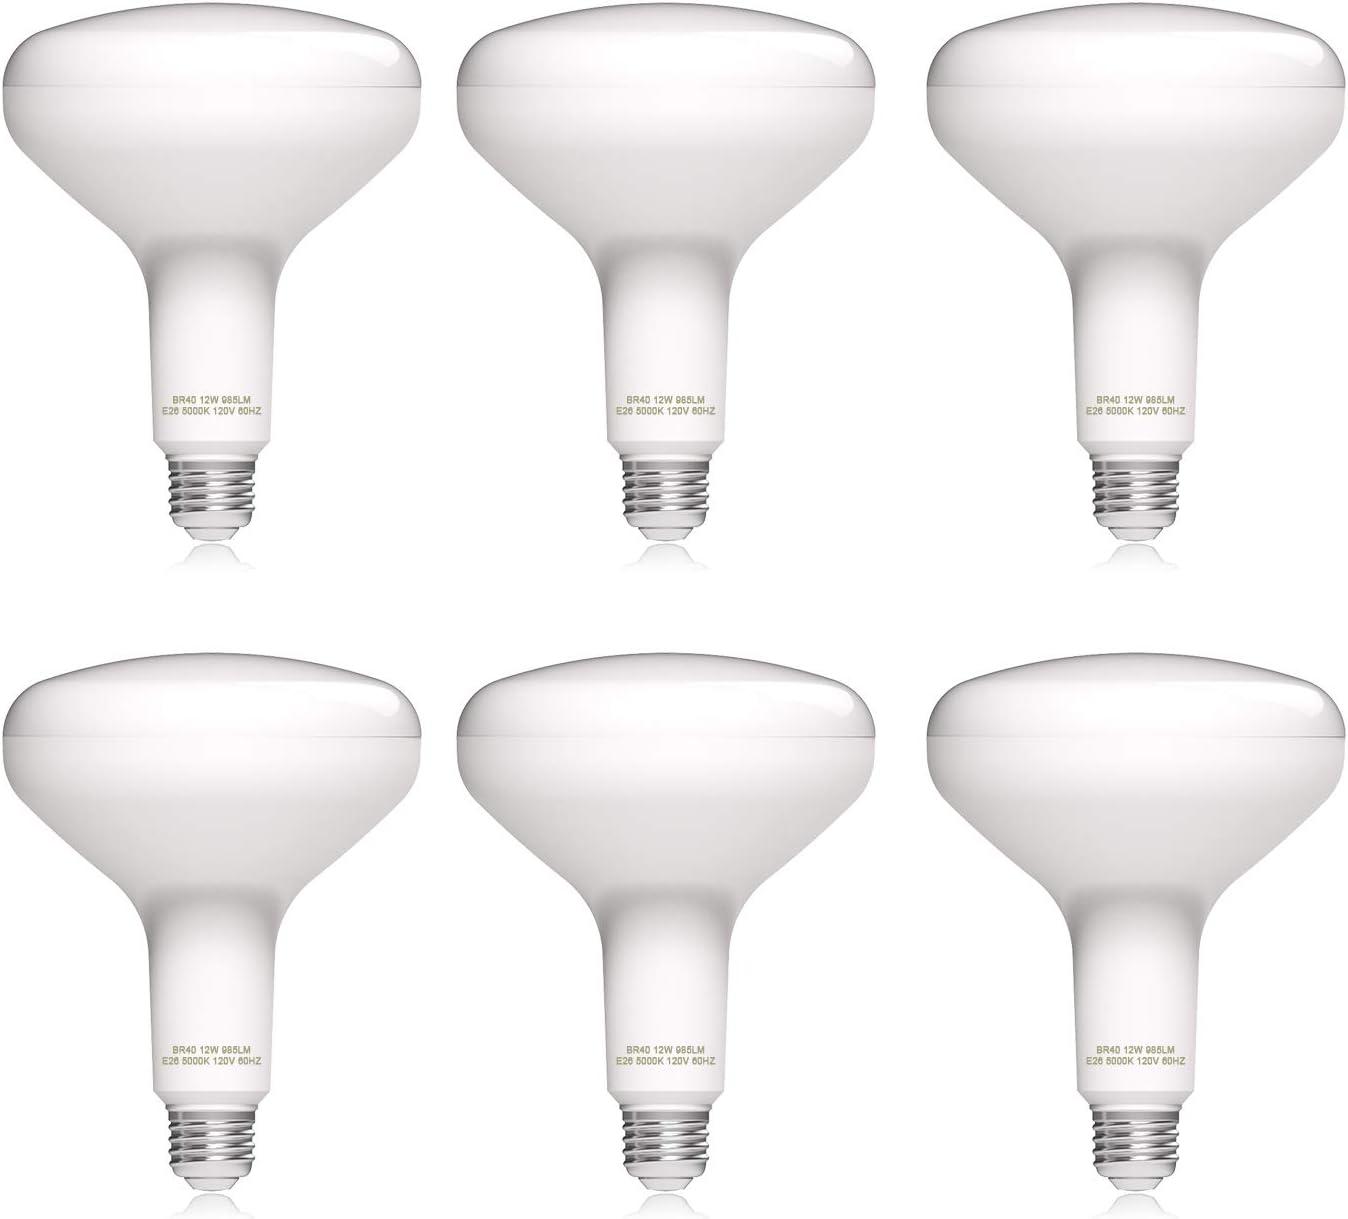 Dimmable BR40 LED Flood Light Bulb 6 Pack for $5.31